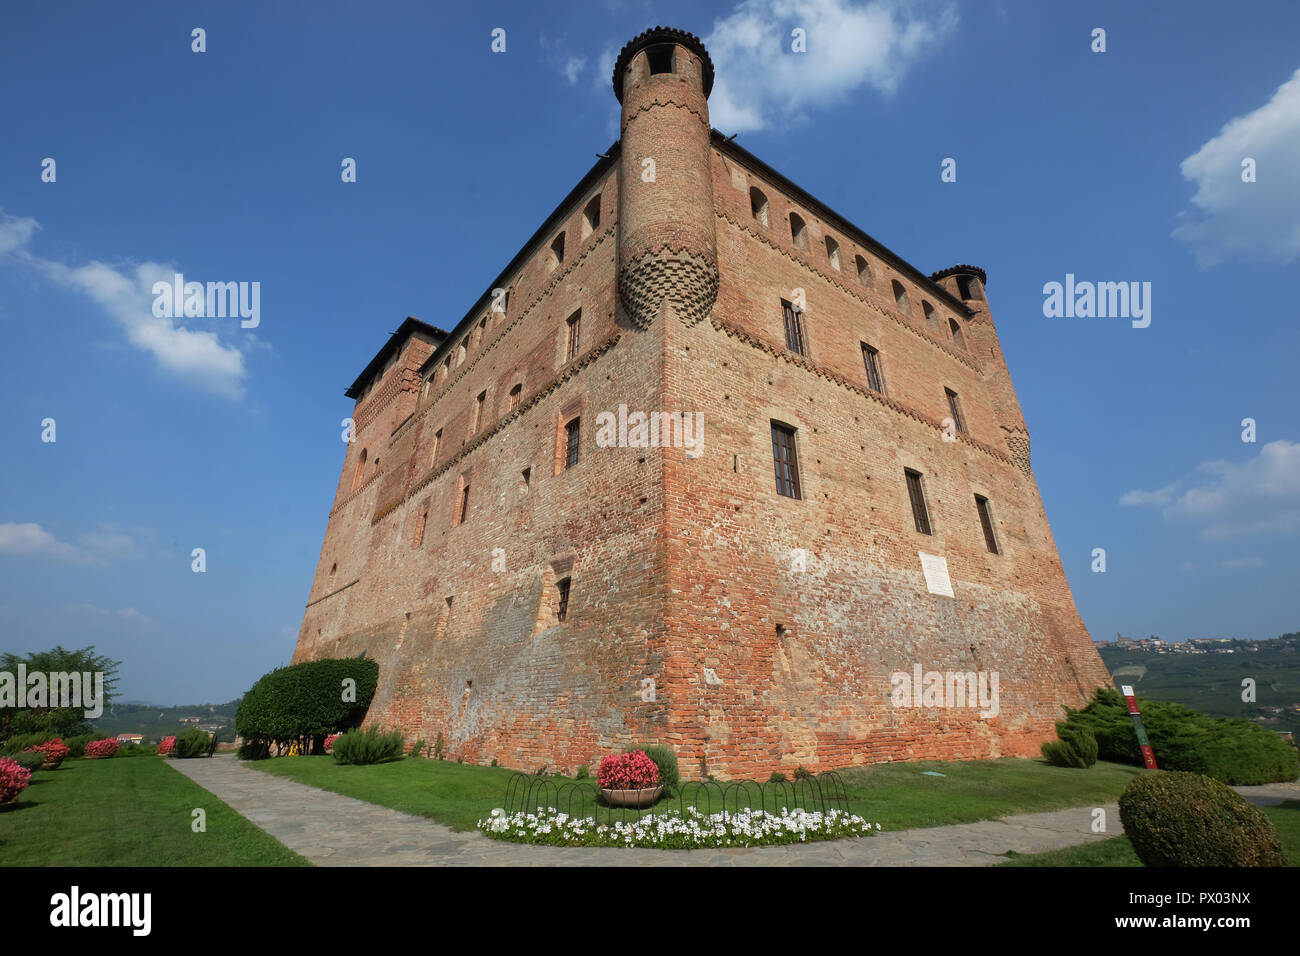 Il castello di Grinzane Cavour.Langhe-Roero e Monferrato nella lista del Patrimonio Mondiale dell'UNESCO.,Piemonte, Italia Foto Stock